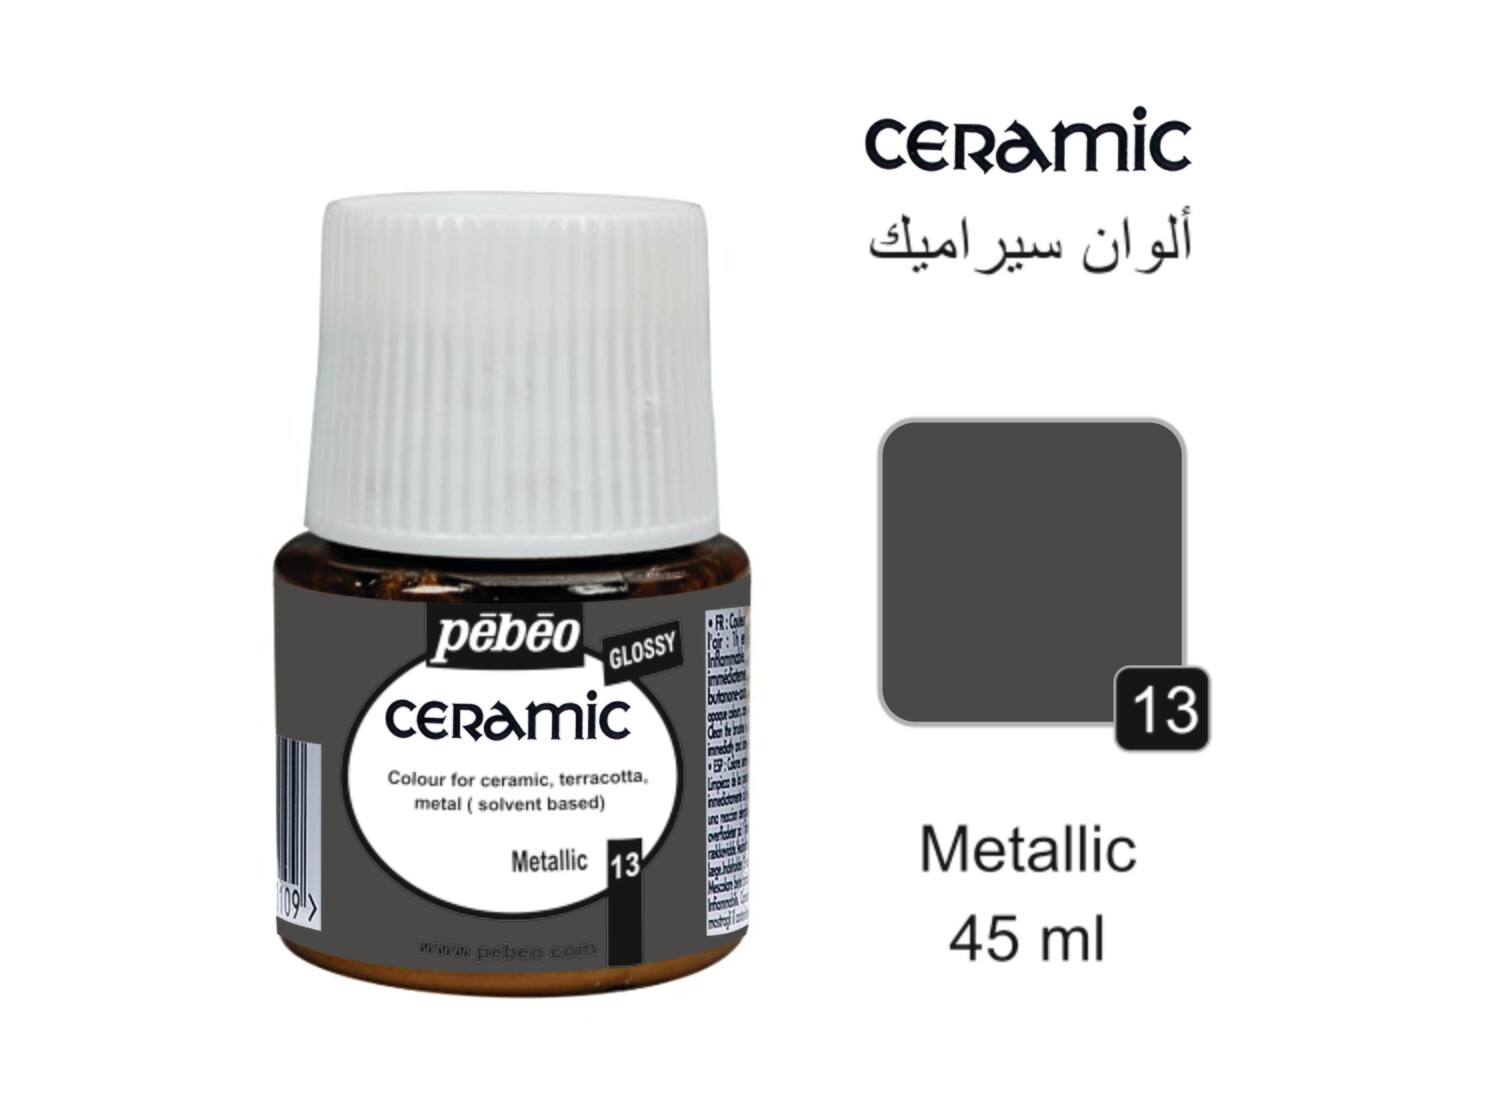 Ceramic colors Metallic, 45 ml No. 13